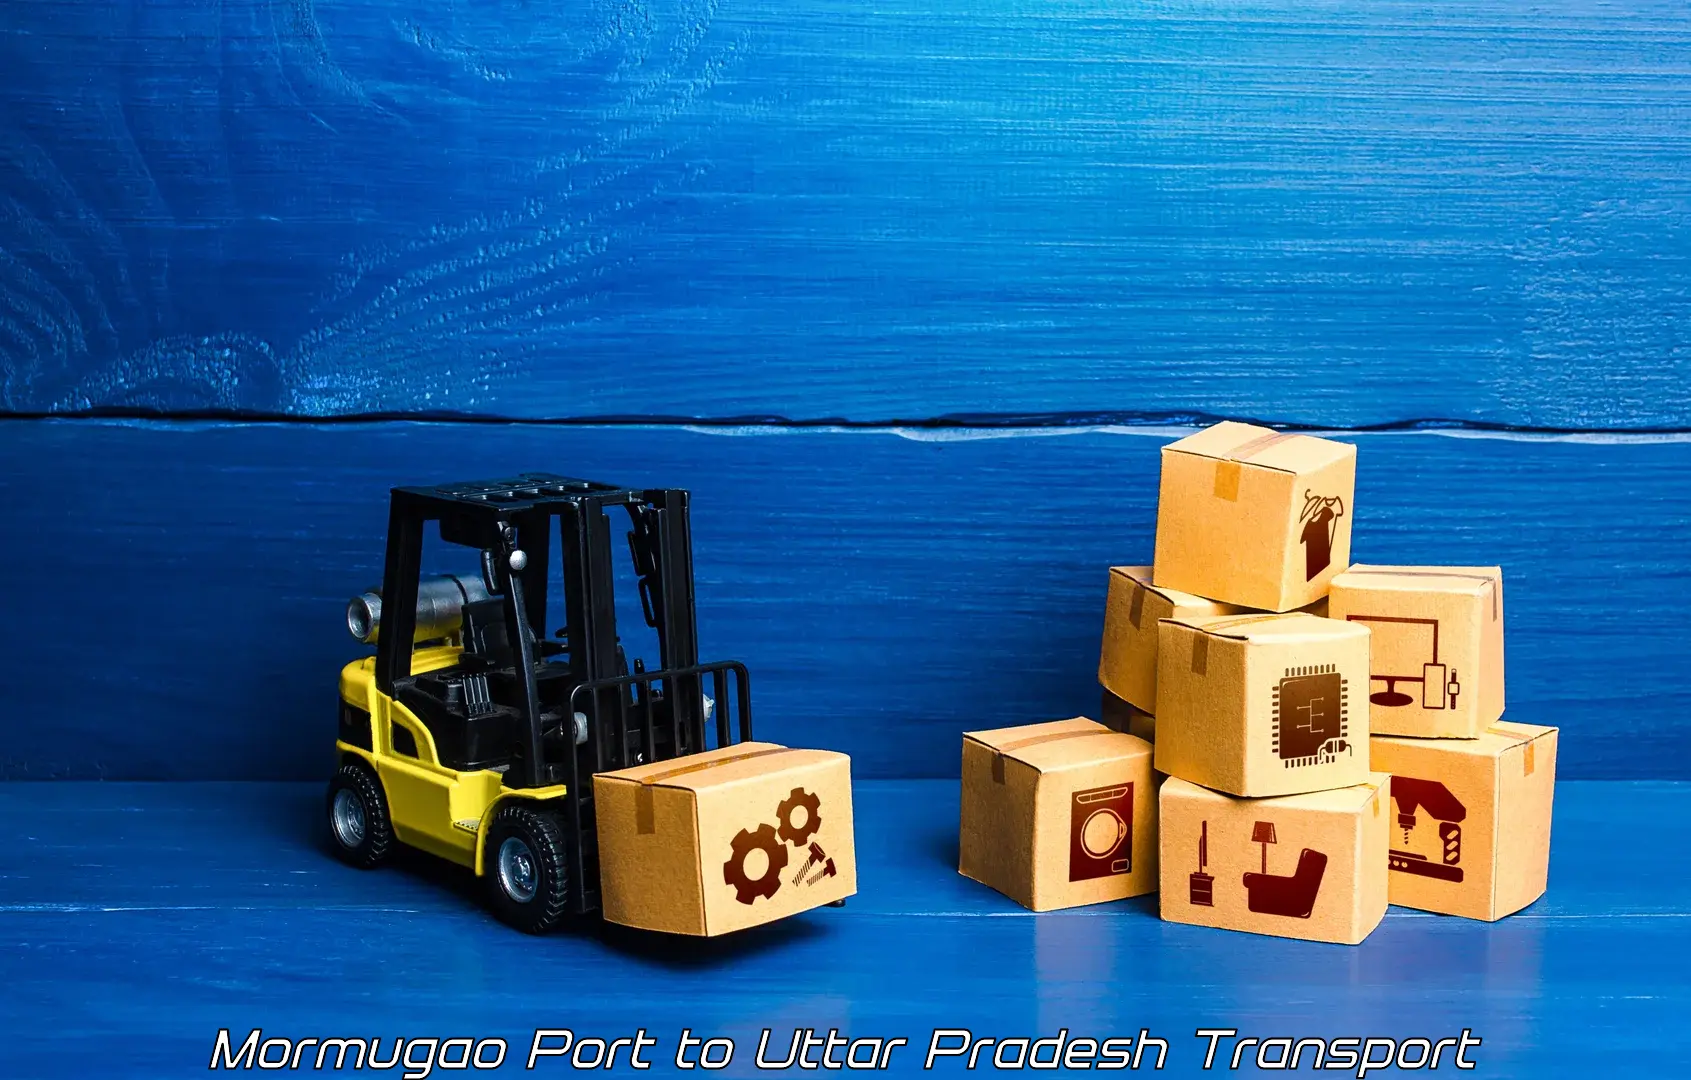 Cargo train transport services Mormugao Port to Jaunpur